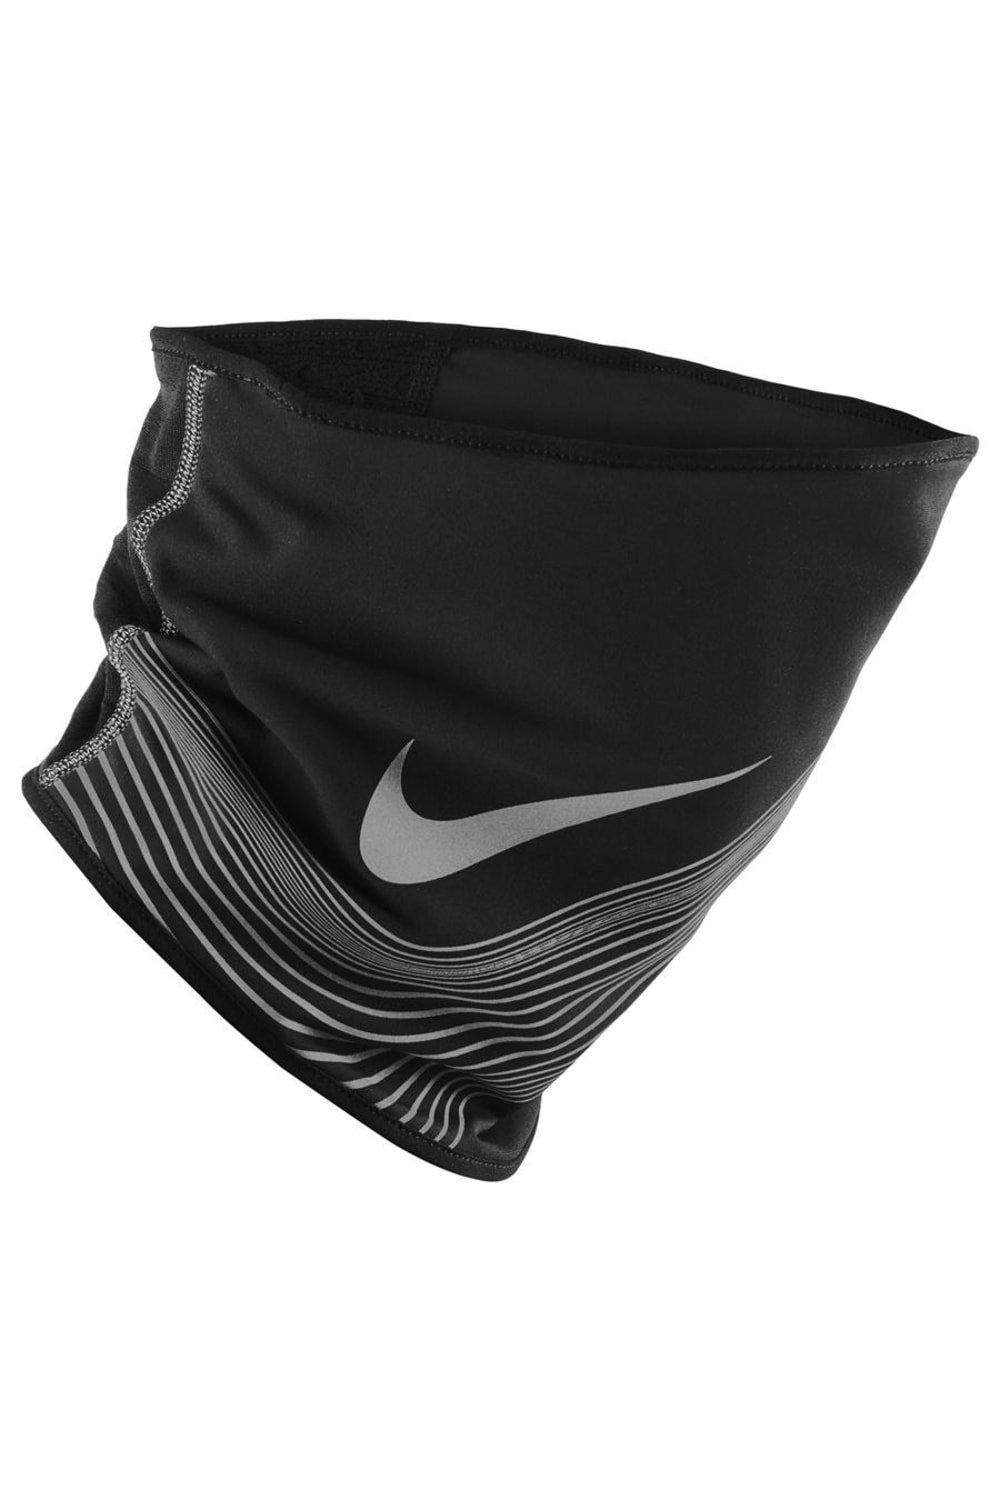 360 Therma-Fit Утеплитель для шеи Nike, черный цена и фото